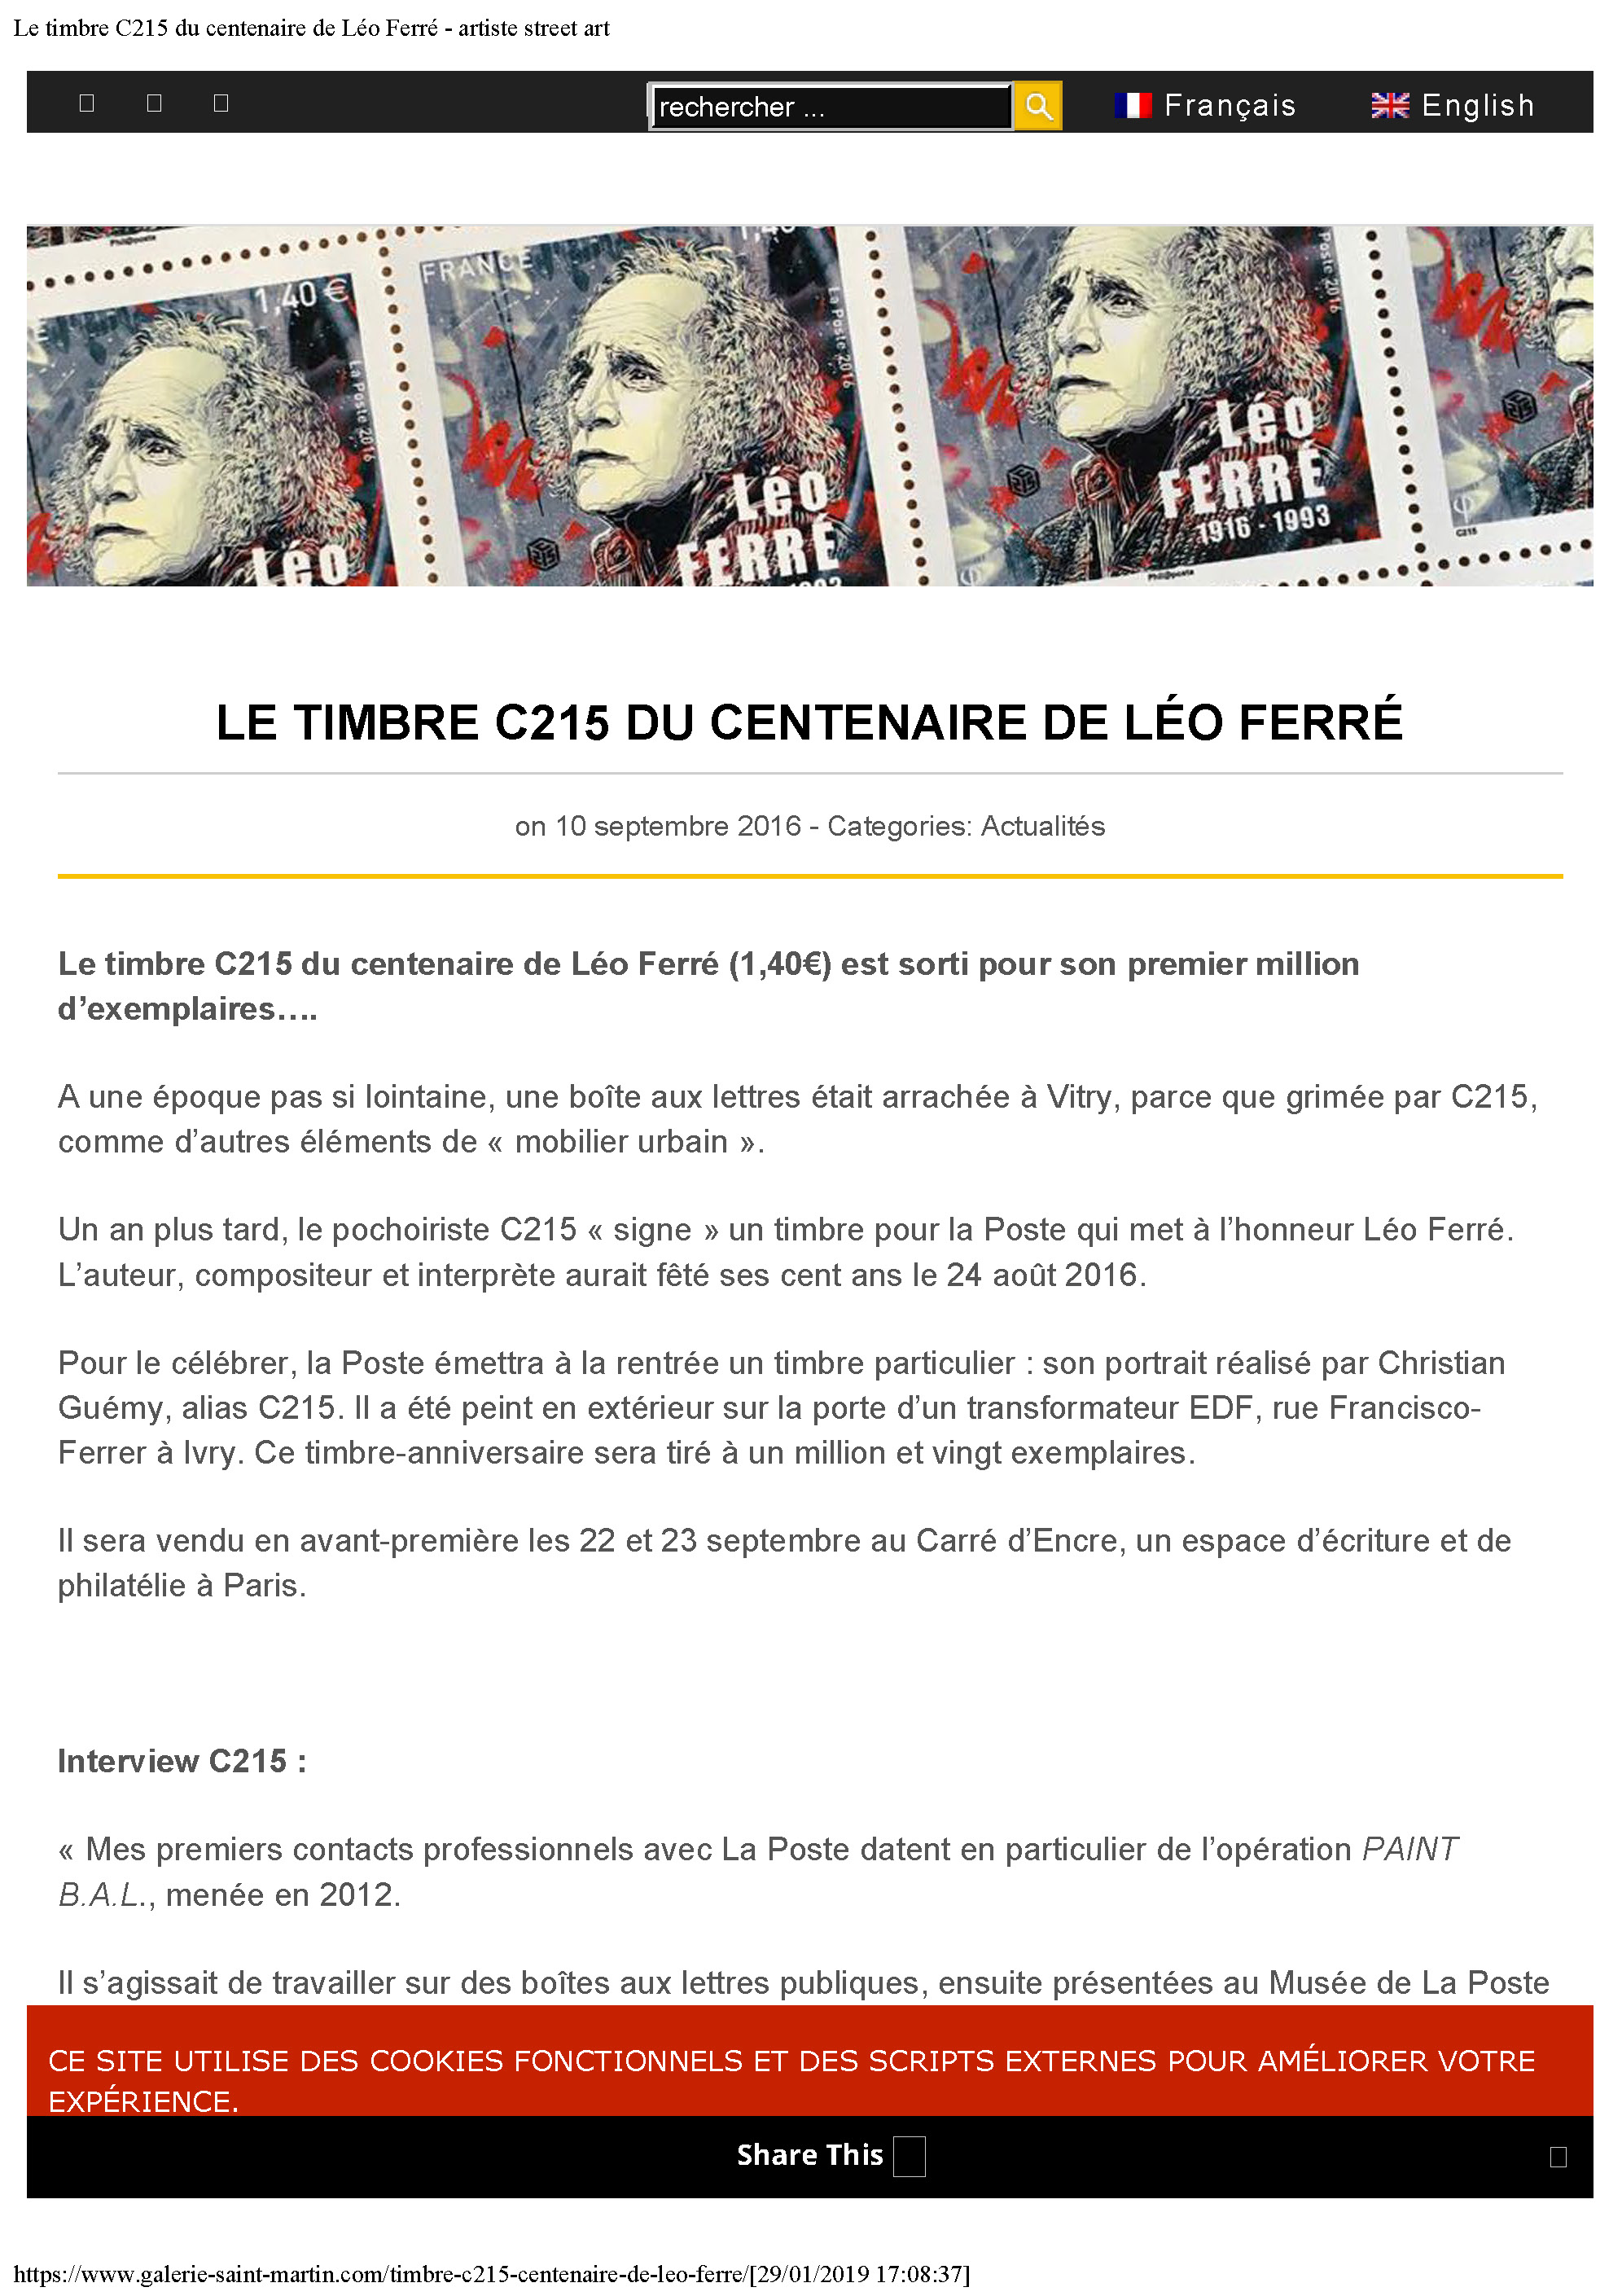 10/09/2016 Le timbre C215 du centenaire de Léo Ferré artiste street-art